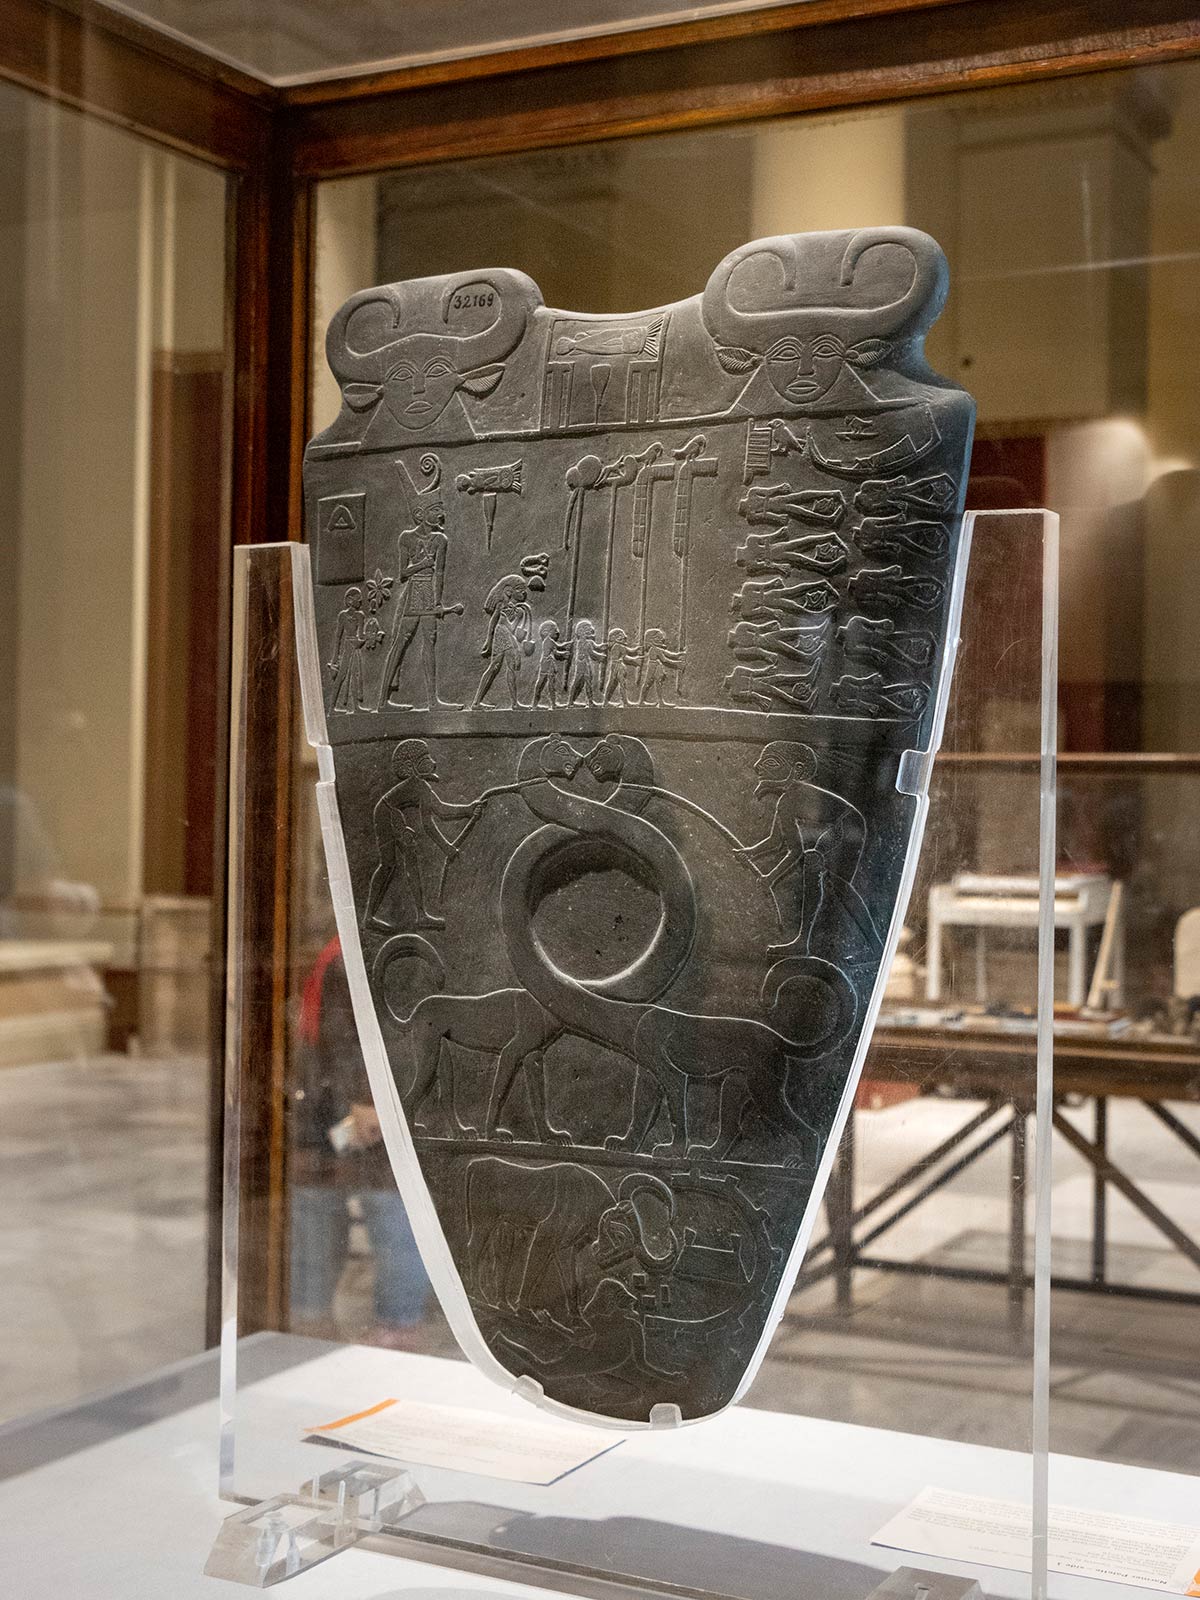 Palette de Narmer, Musée égyptien, Le Caire, Égypte / Narmer Palette, Egyptian Museum, Cairo, Egypt